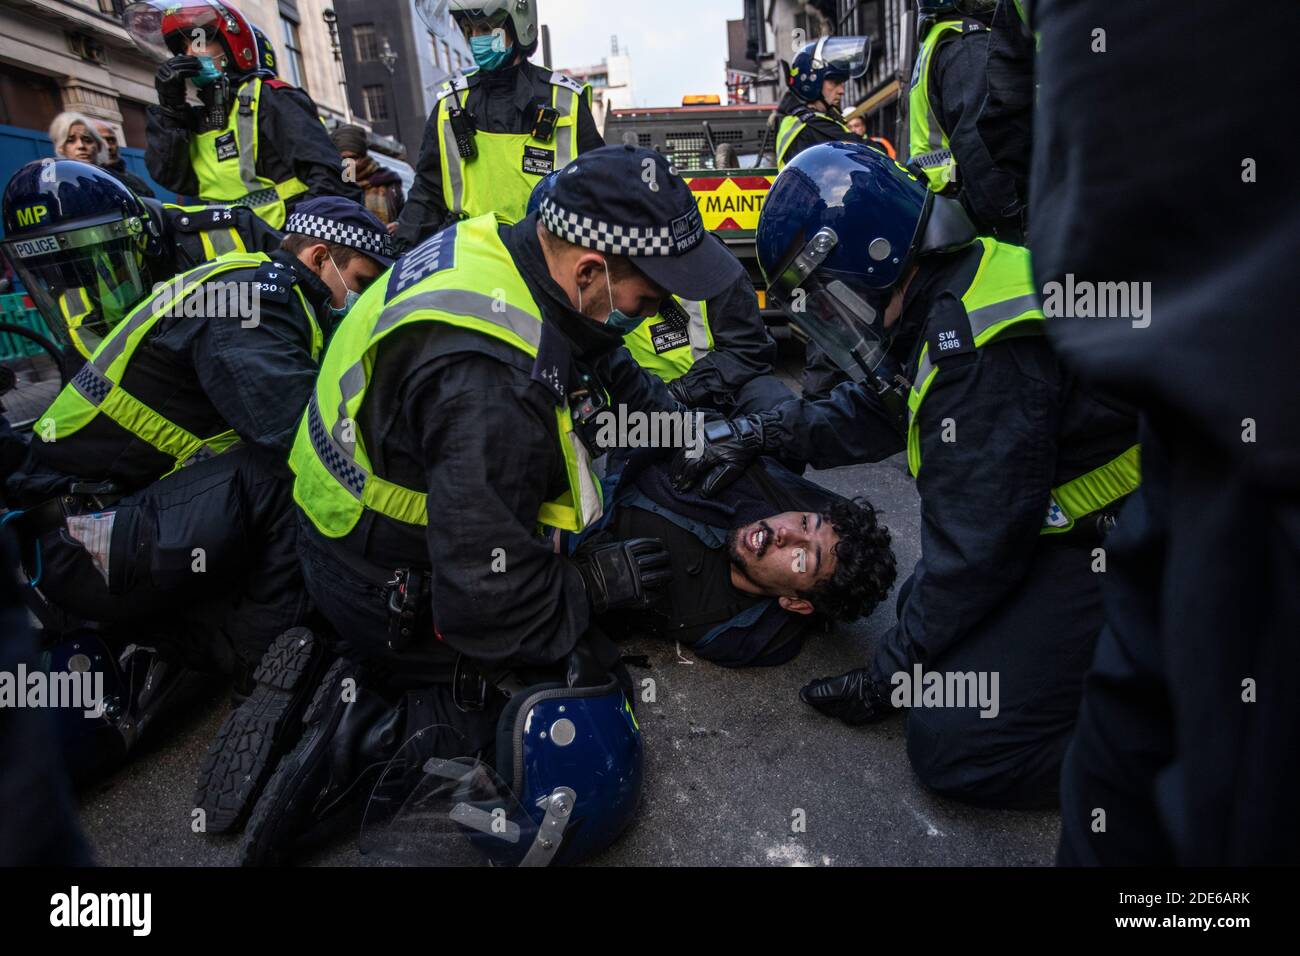 La police anti-émeute a arrêté plus de 150 manifestants à Oxford Street lors de manifestations anti-verrouillage dans la capitale Londres, Angleterre, Royaume-Uni Banque D'Images